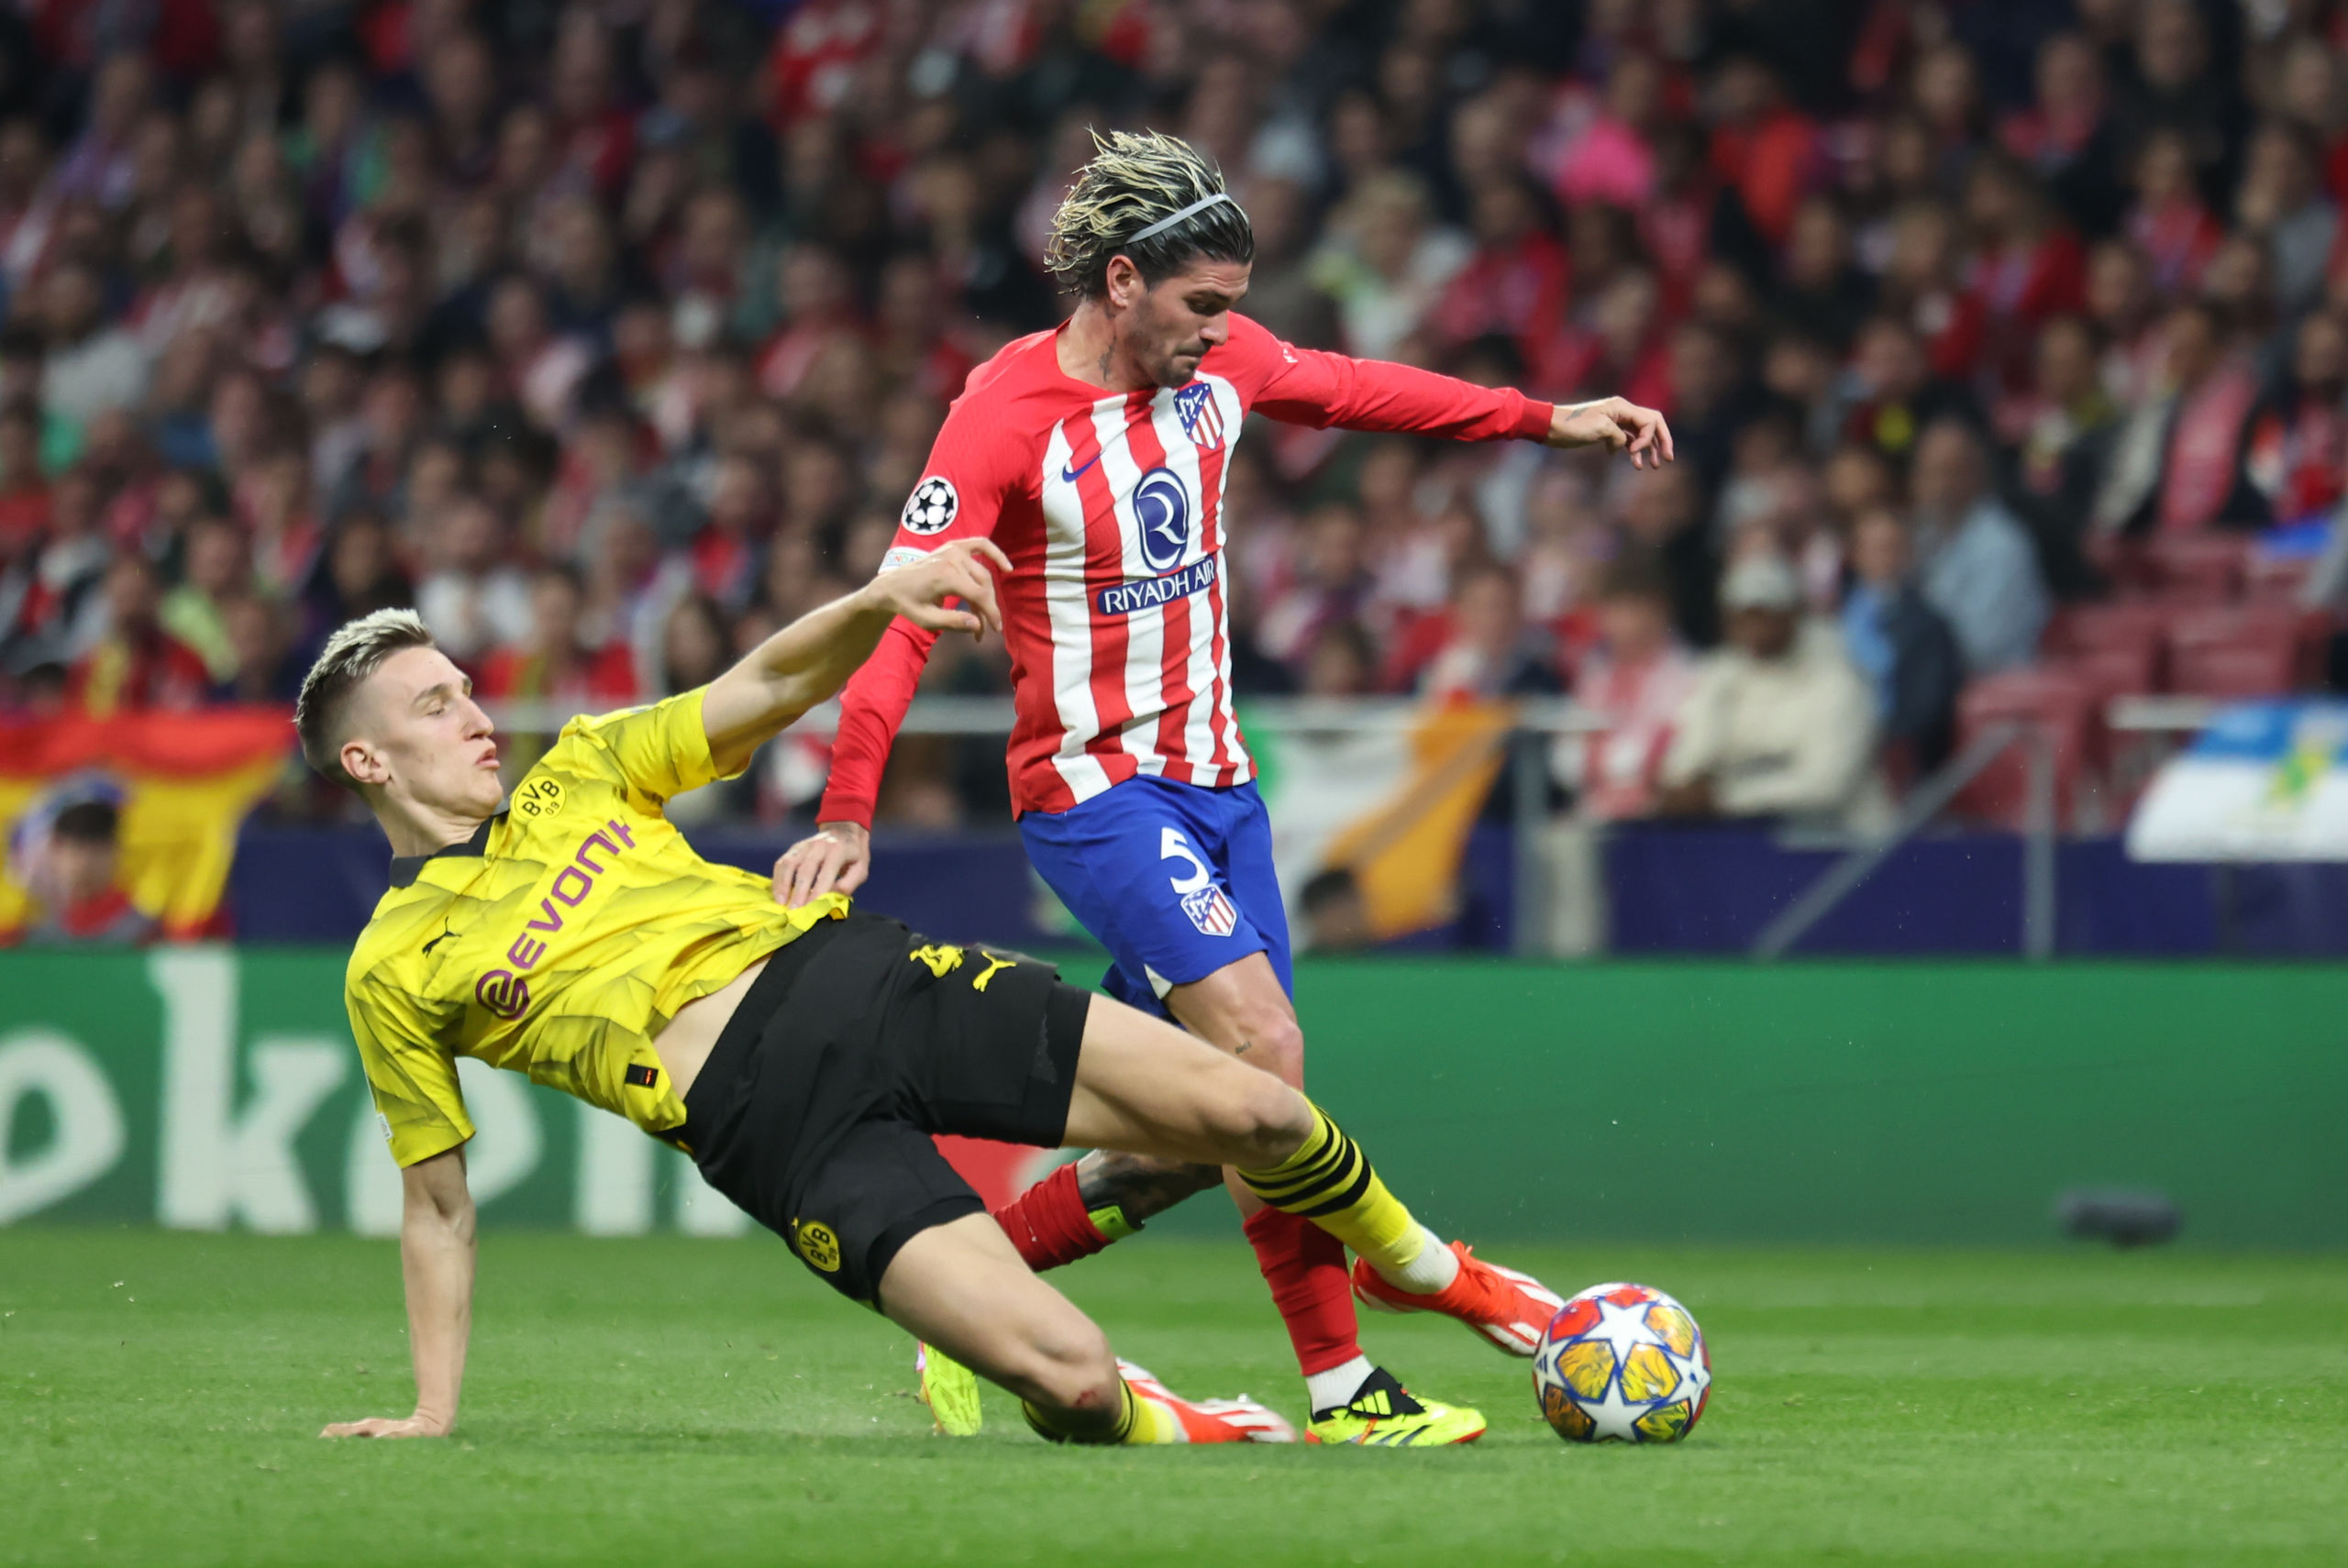 El Atlético de Madrid deja a medias los deberes ante el Borussia Dortmund (2-1)